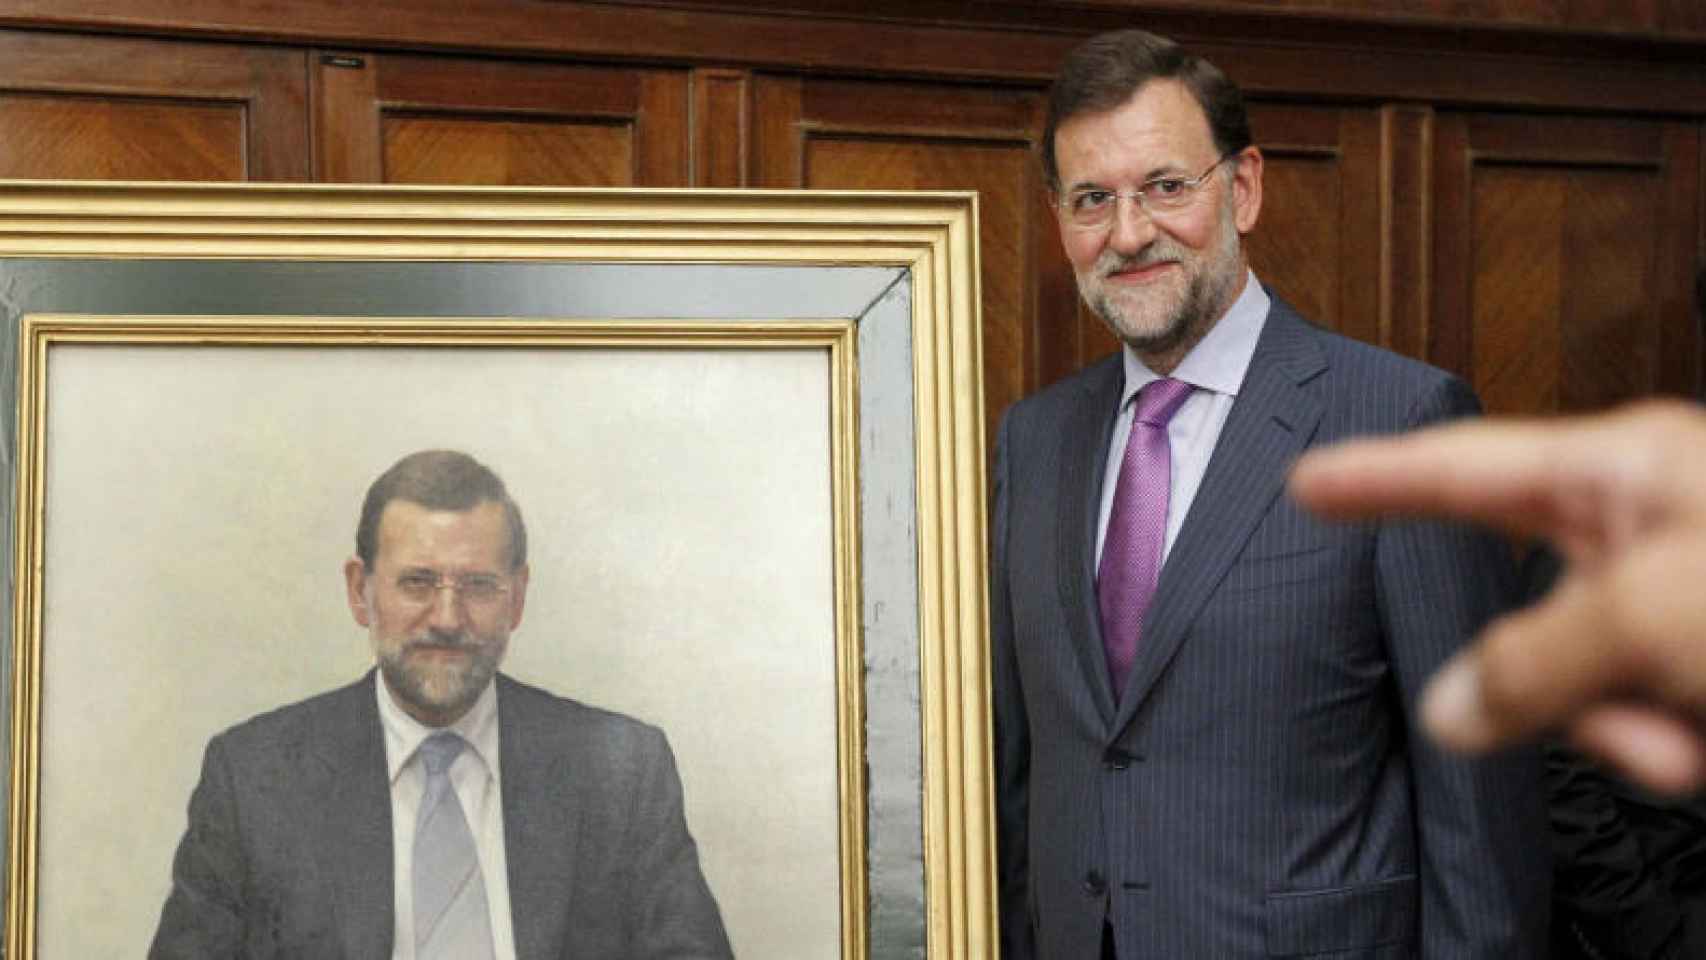 Mariano Rajoy posa junto a su retrato cuando fue ministro de Educación/ Efe